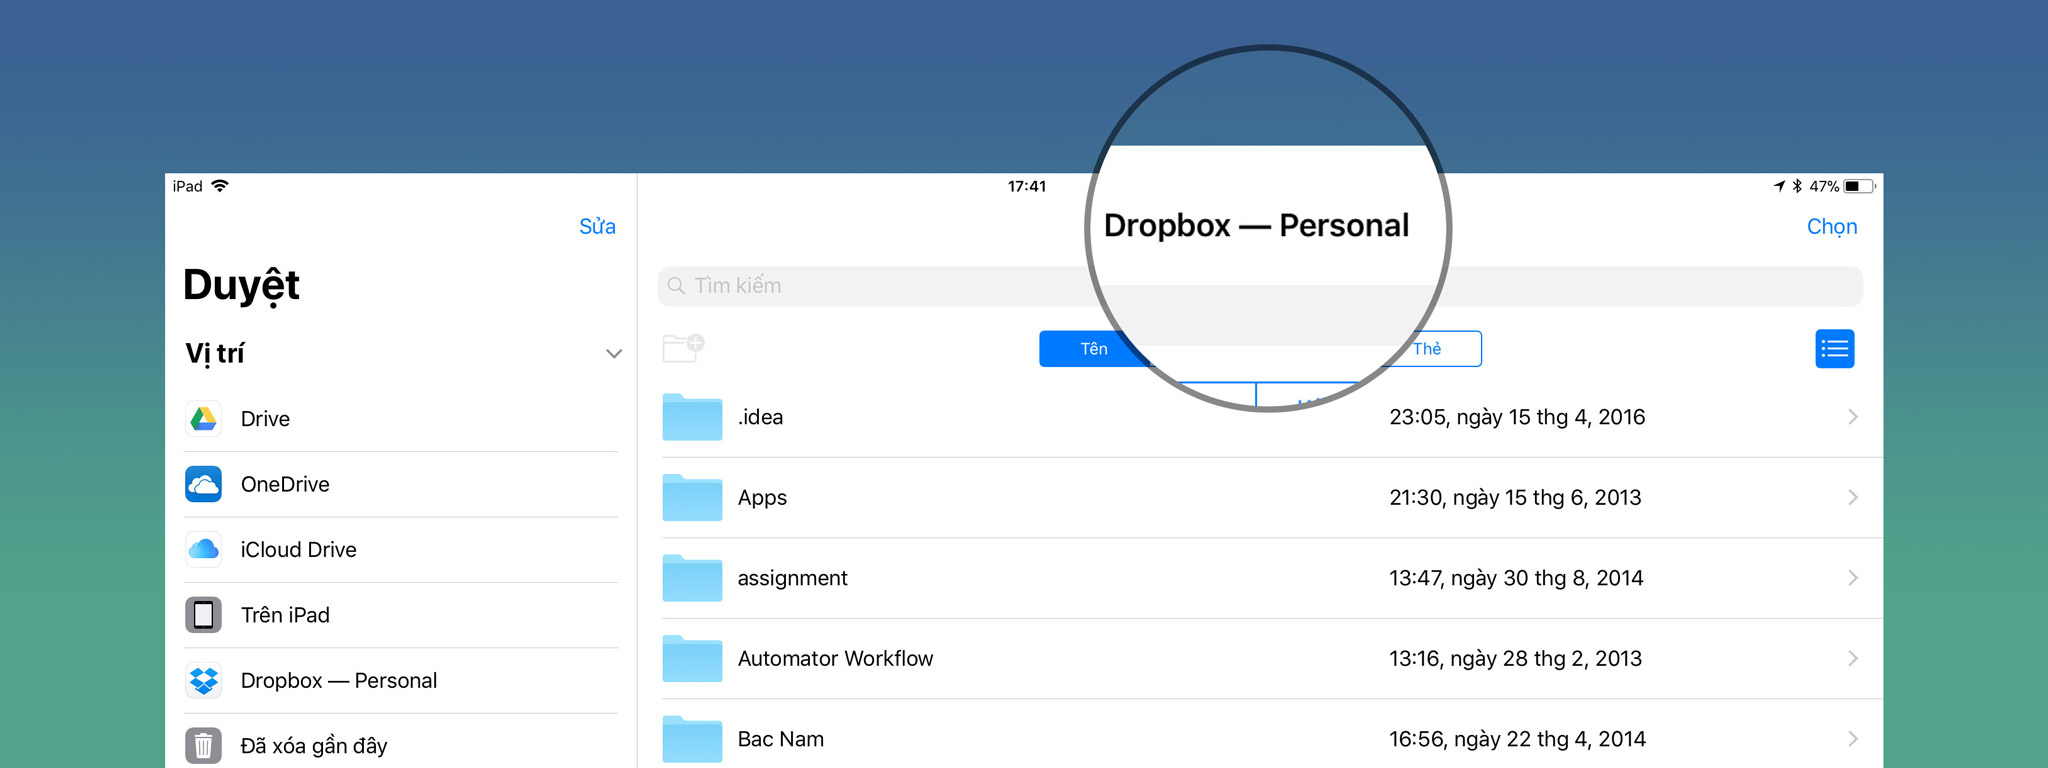 Dropbox đã hỗ trợ đầy đủ cho ứng dụng Files của iOS 11, anh em lên nào